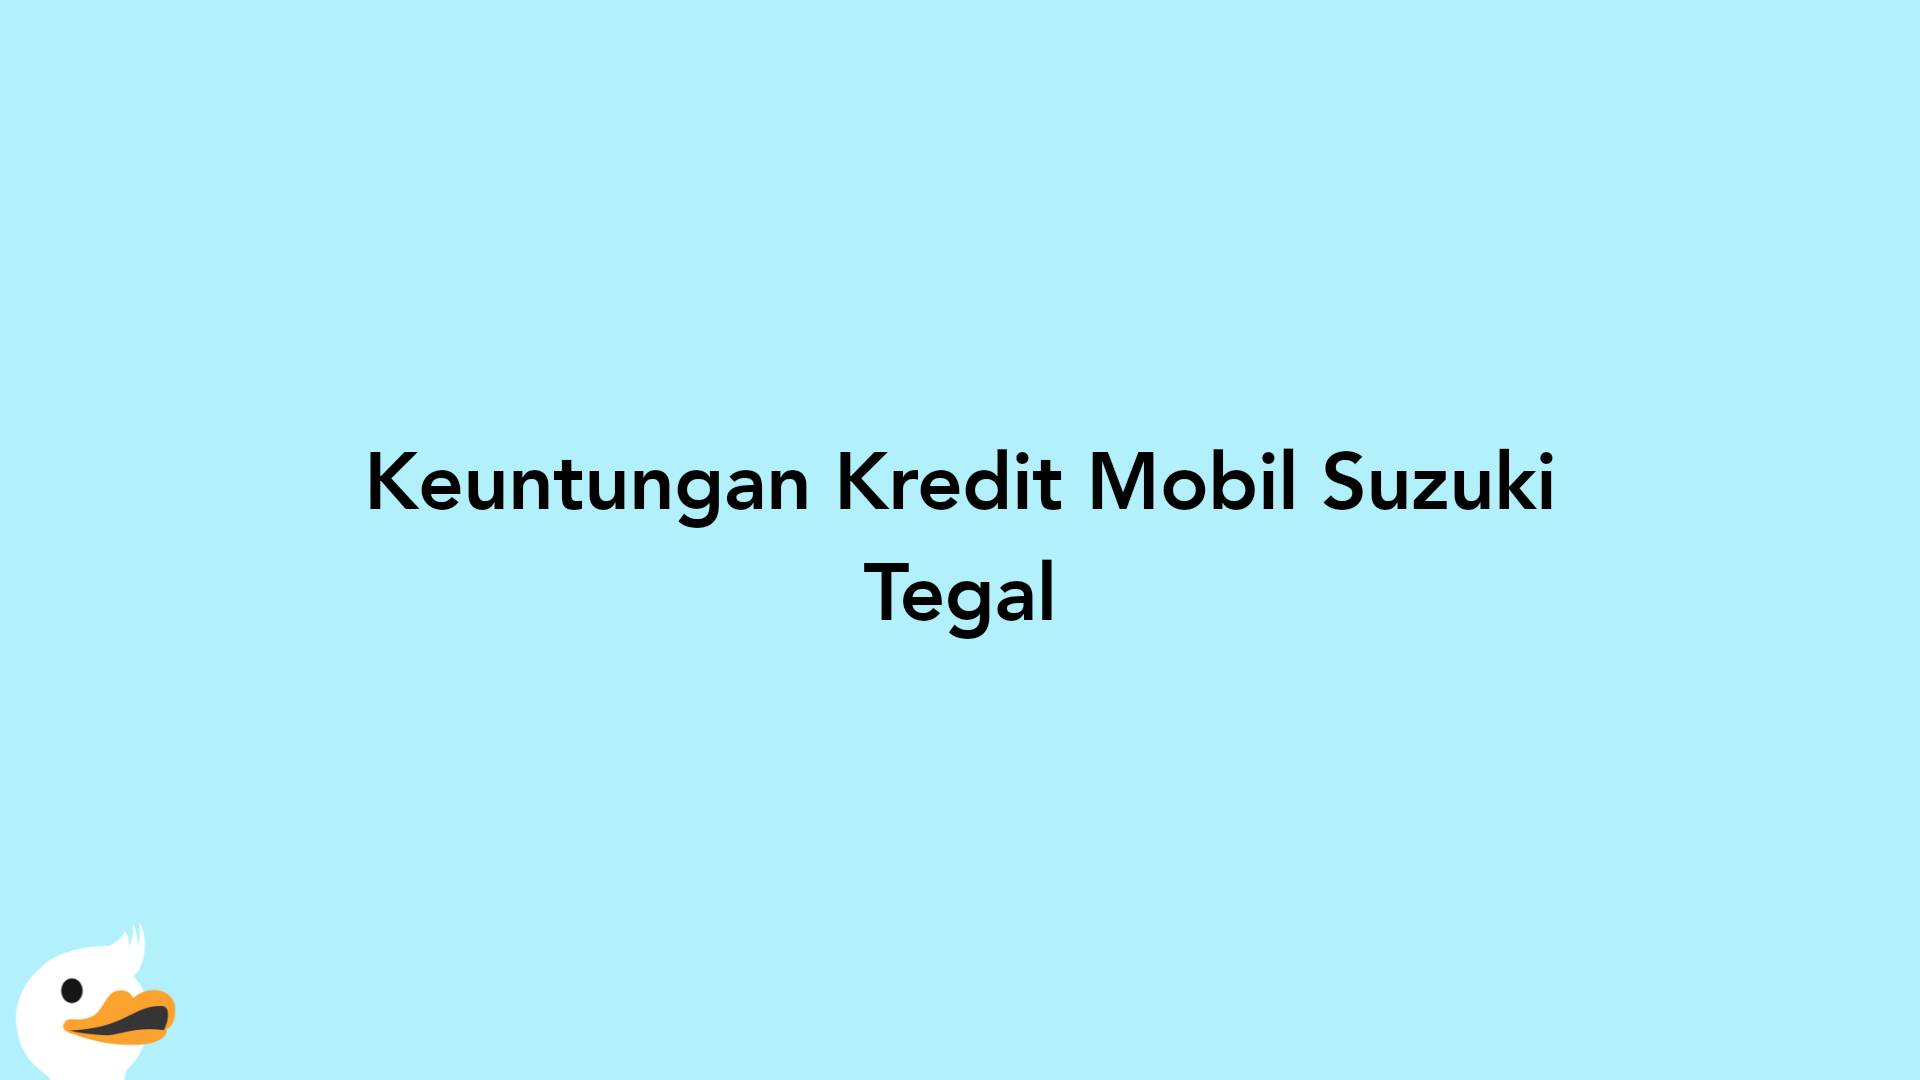 Keuntungan Kredit Mobil Suzuki Tegal